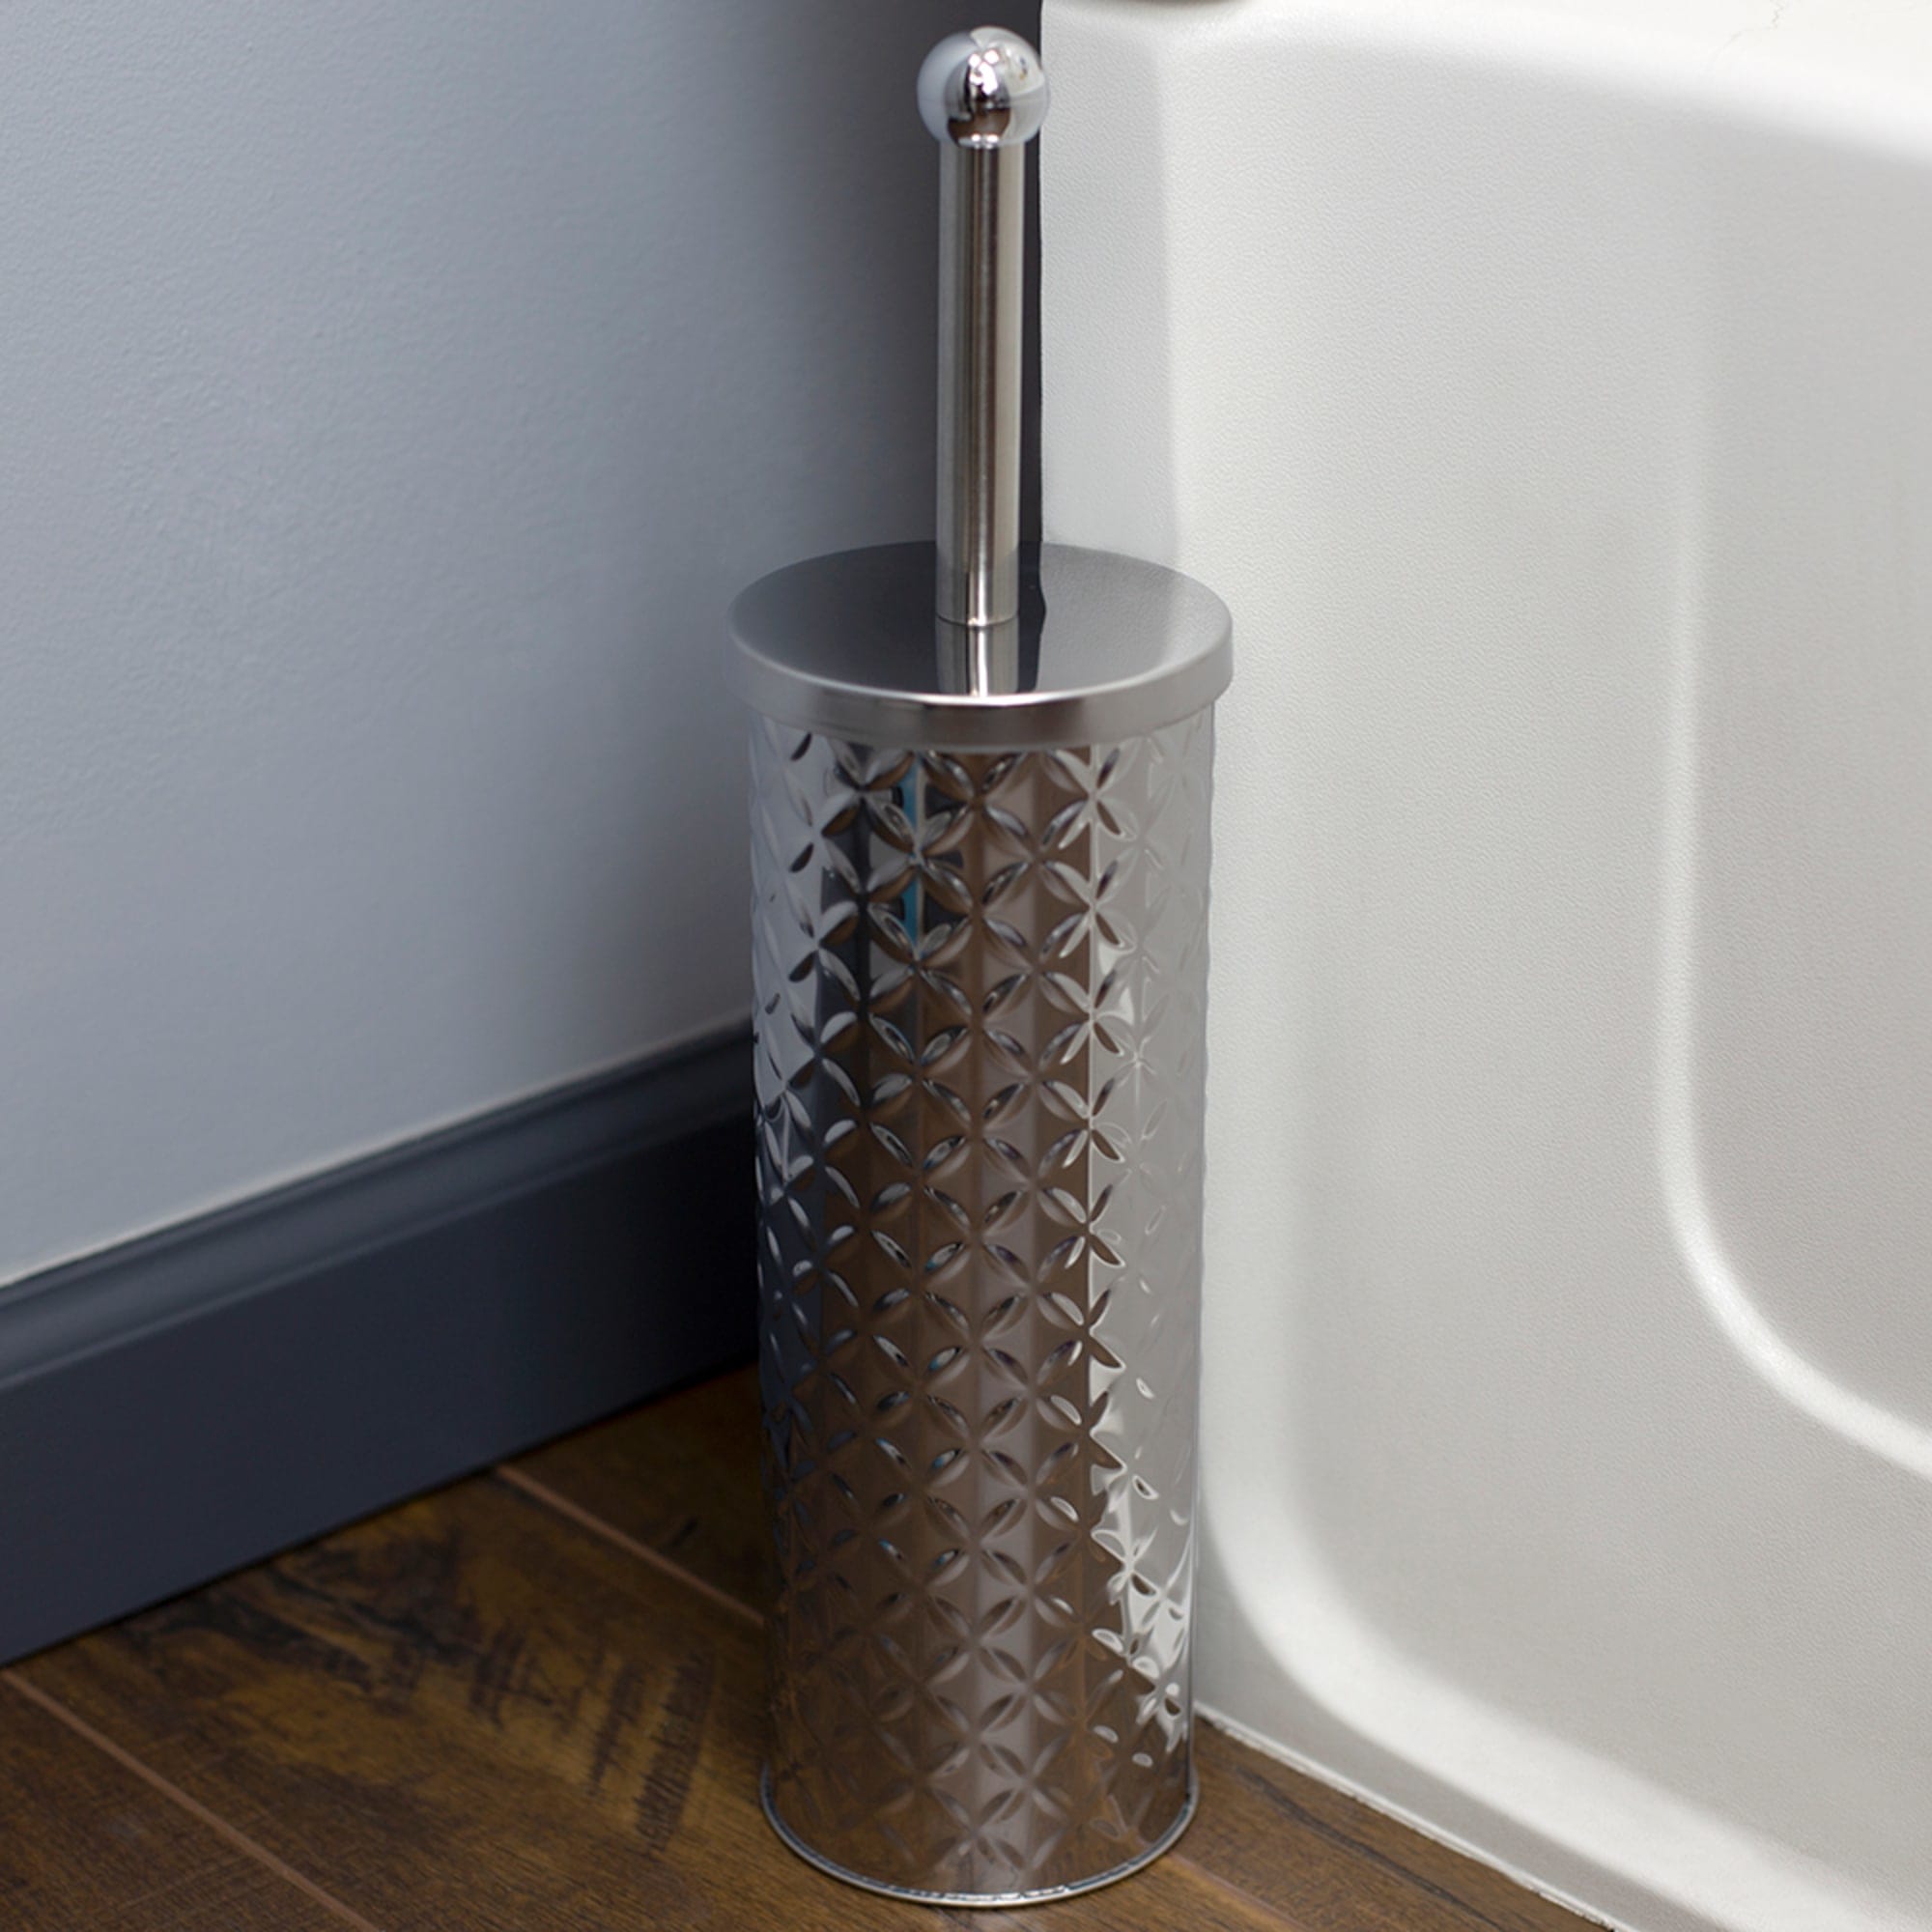 Home Basics Embossed Stainless Steel Toilet Brush Holder, Silver $5.00 EACH, CASE PACK OF 12